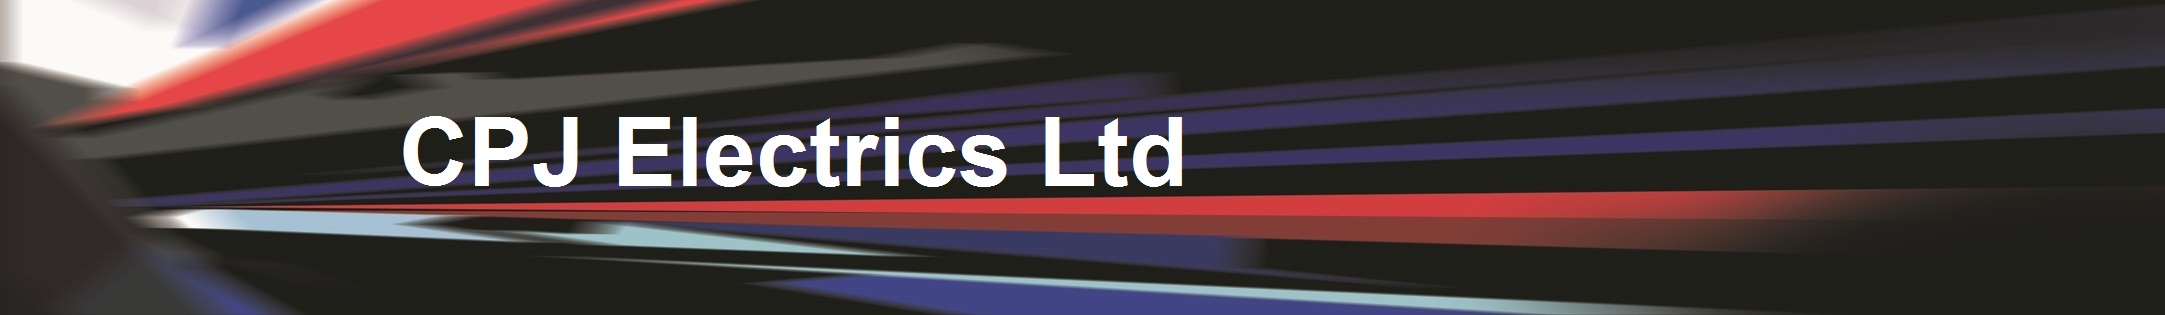 CPJ Electrics Ltd - logo